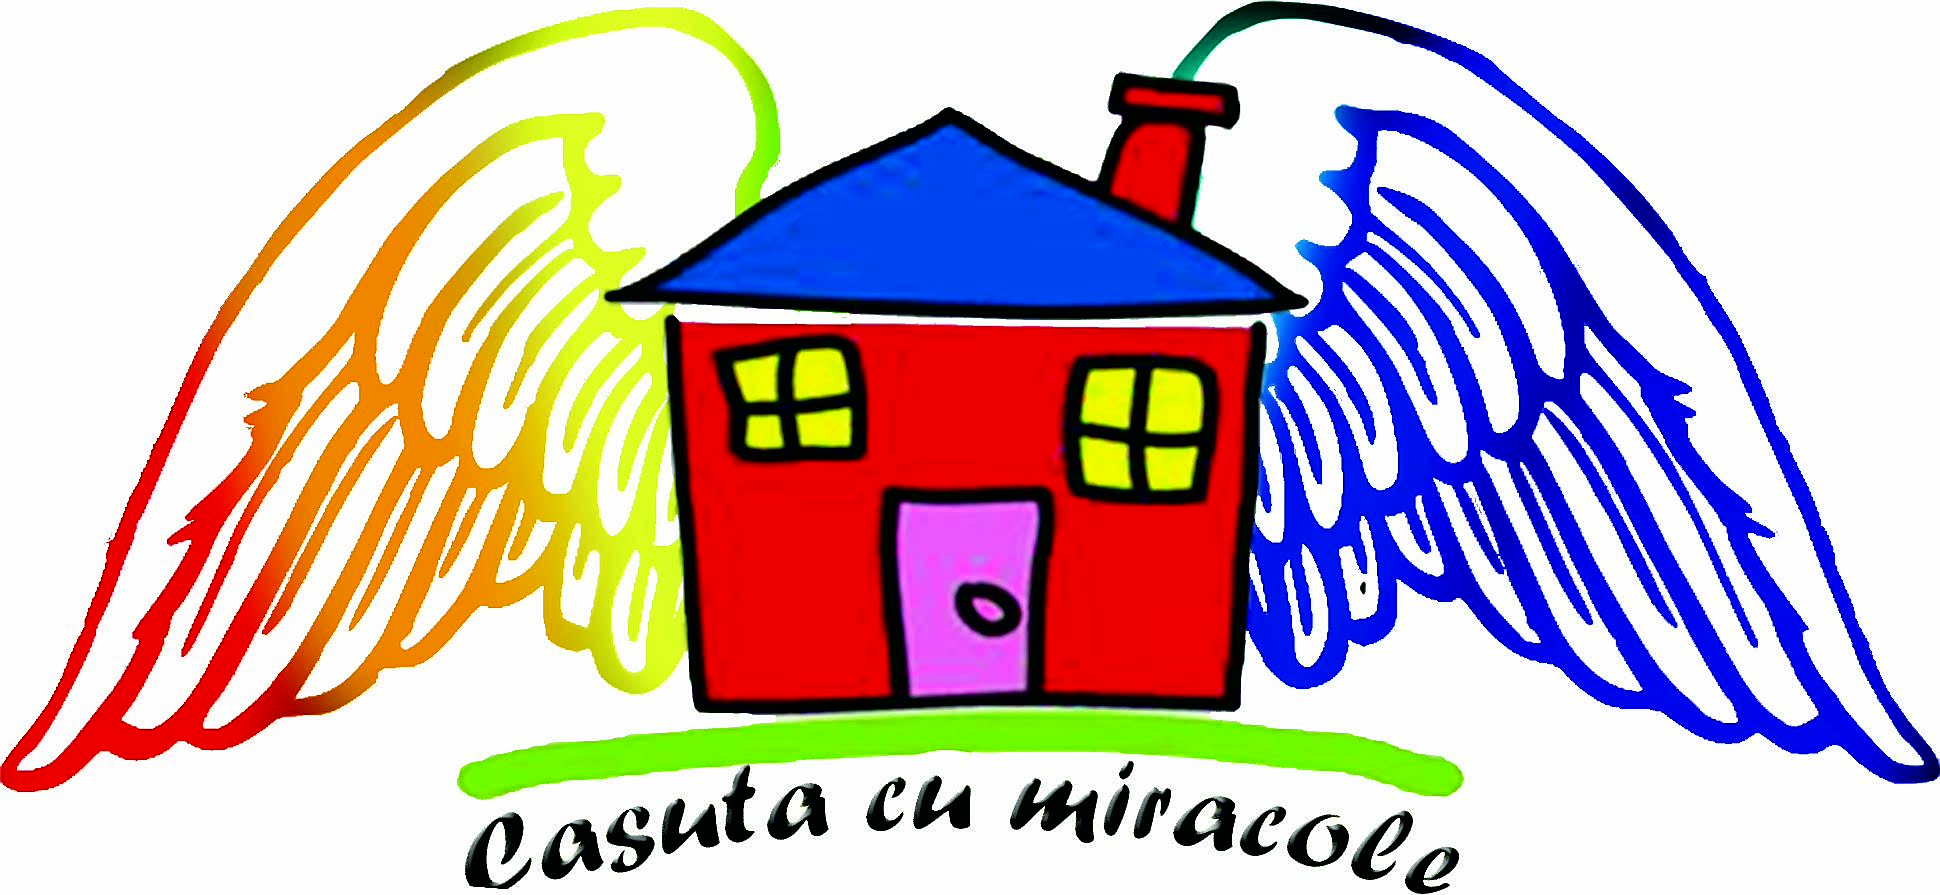 Căsuța cu Miracole  logo